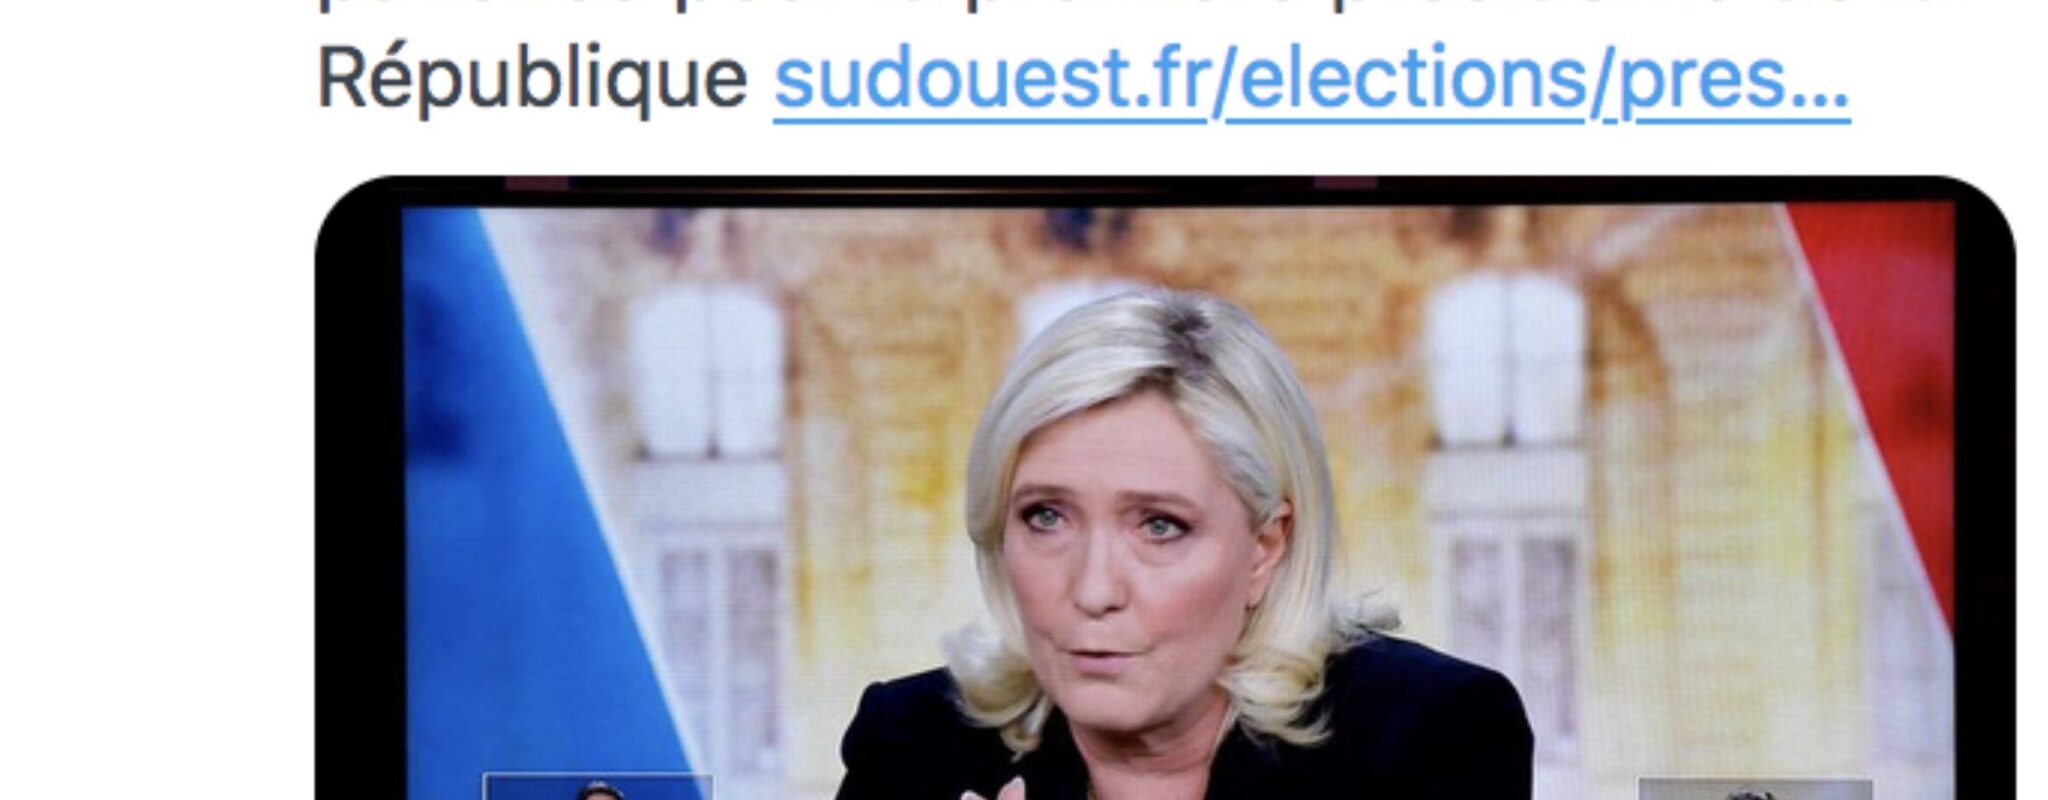 Sud Ouest annonce par erreur Marine Le Pen « première présidente de la République »